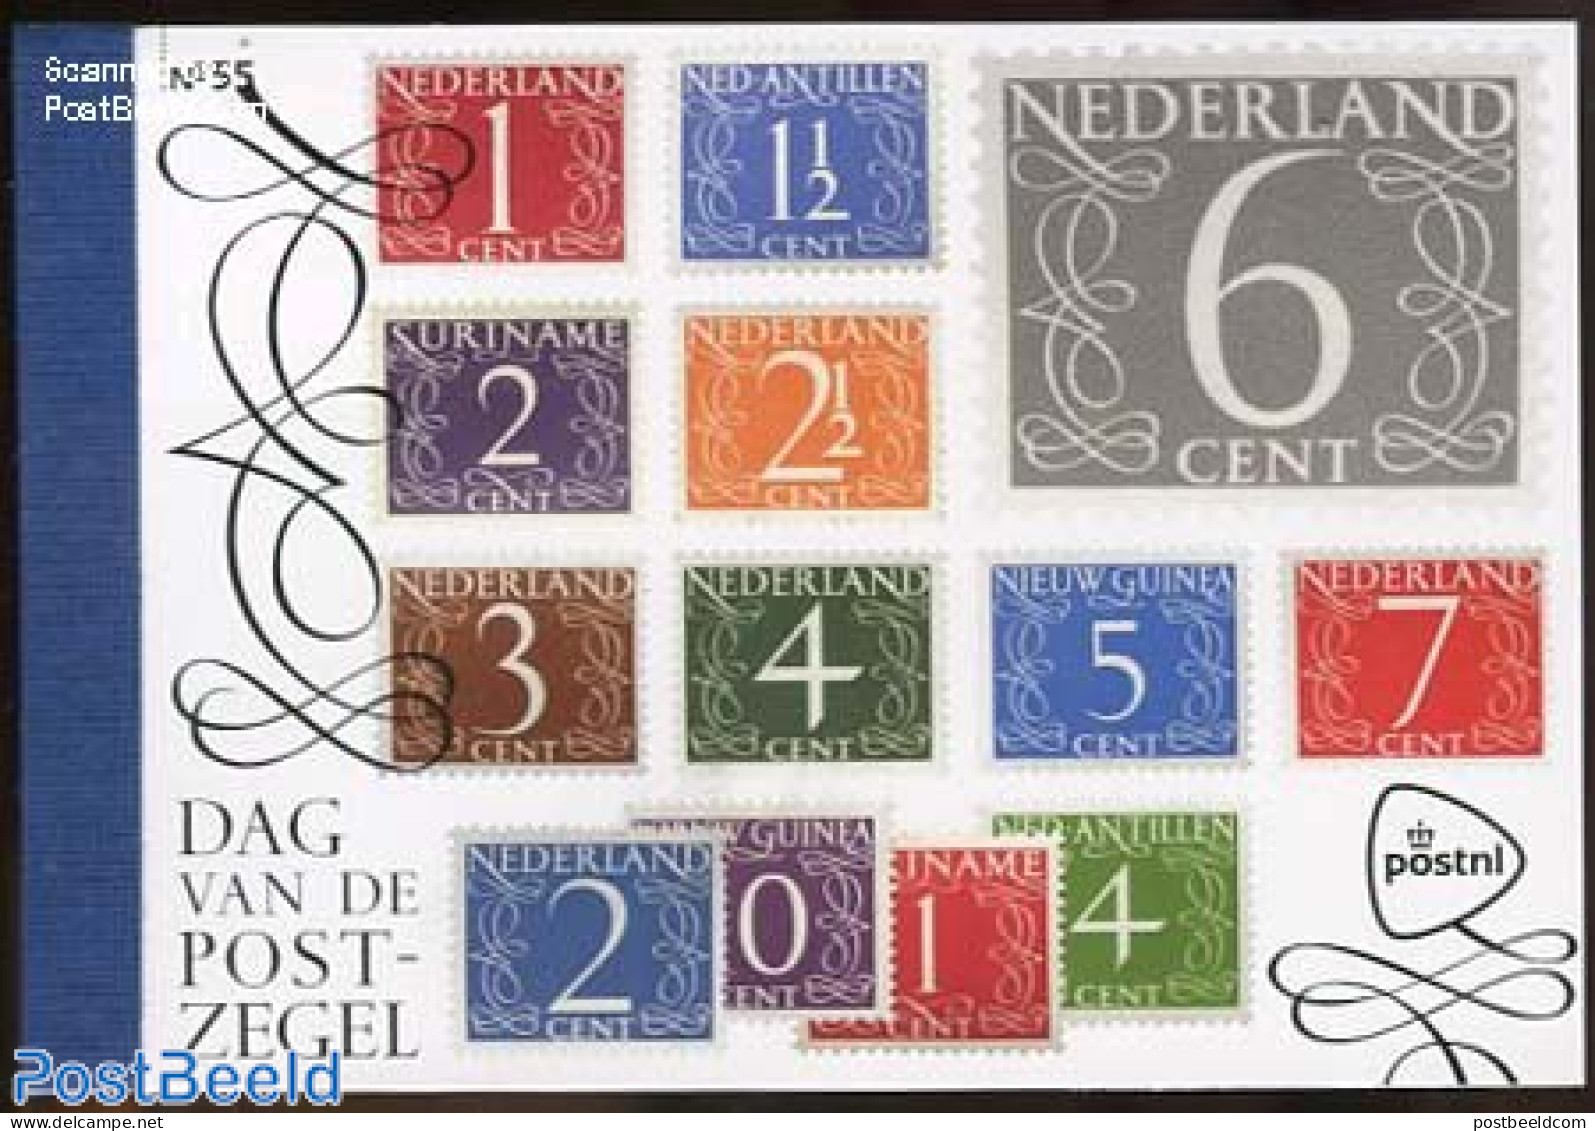 Netherlands 2014 Stamp Day Prestige Booklet, Mint NH, Stamp Booklets - Stamp Day - Stamps On Stamps - Unused Stamps